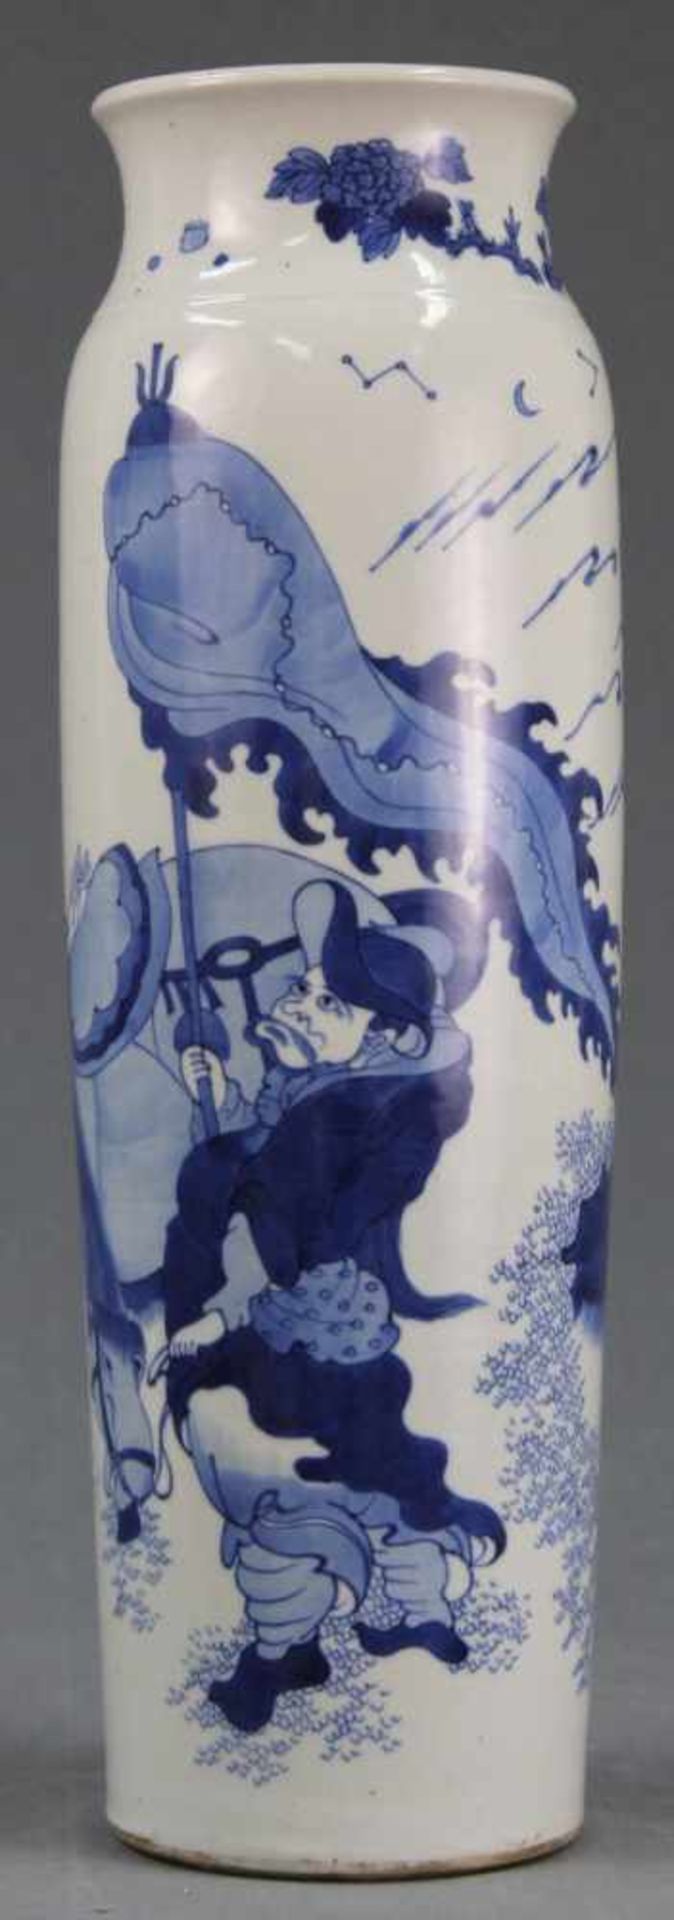 Vase Blau - Weiß? - Porzellan. China alt, um 1900. 47,5 cm hoch.Vase Blue - White? - Porcelain.